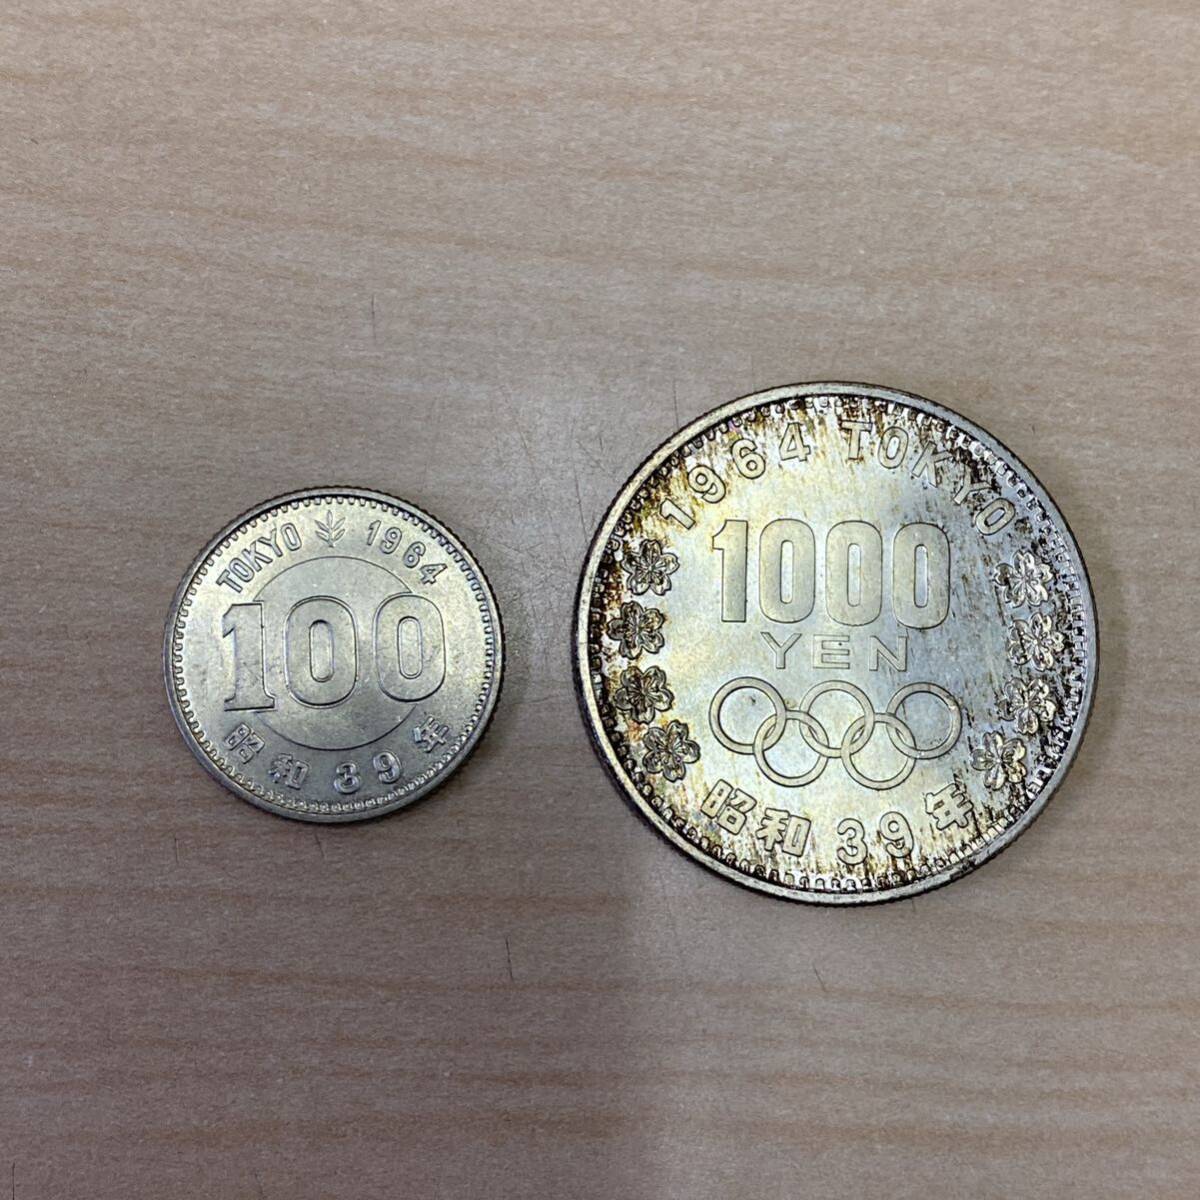 【TK0403】 1964年 東京オリンピック 記念貨幣 セット 1000円銀貨 100円銀貨 ケース入り 日本 古銭 コレクションの画像2